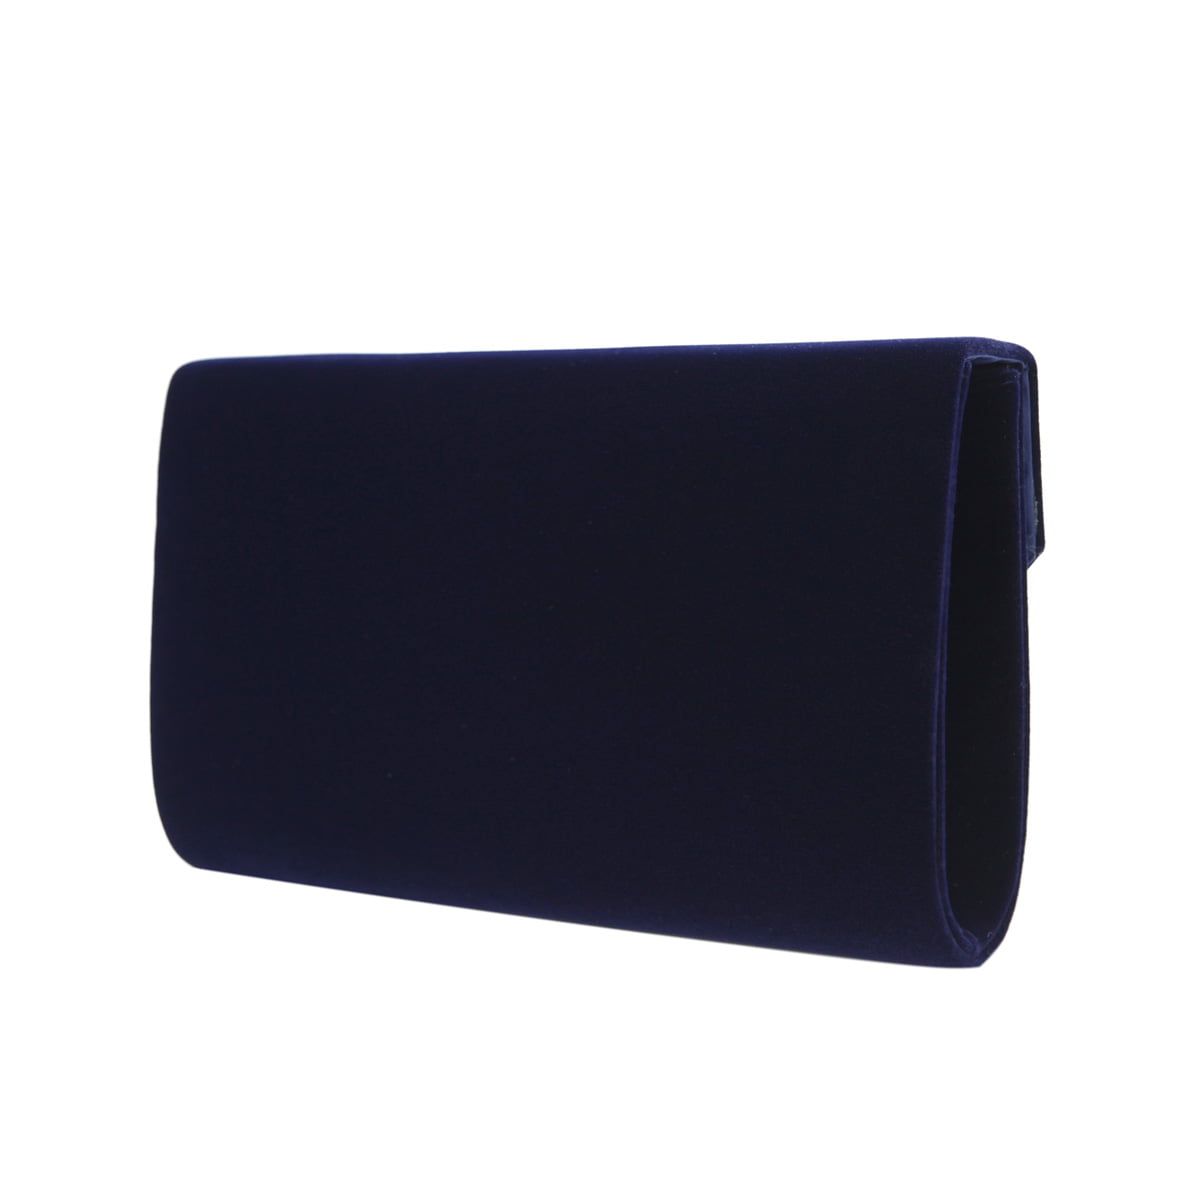 TrendsBlue Elegant Solid Color Velvet Clutch Evening Bag Handbag, Black One  Size: Handbags